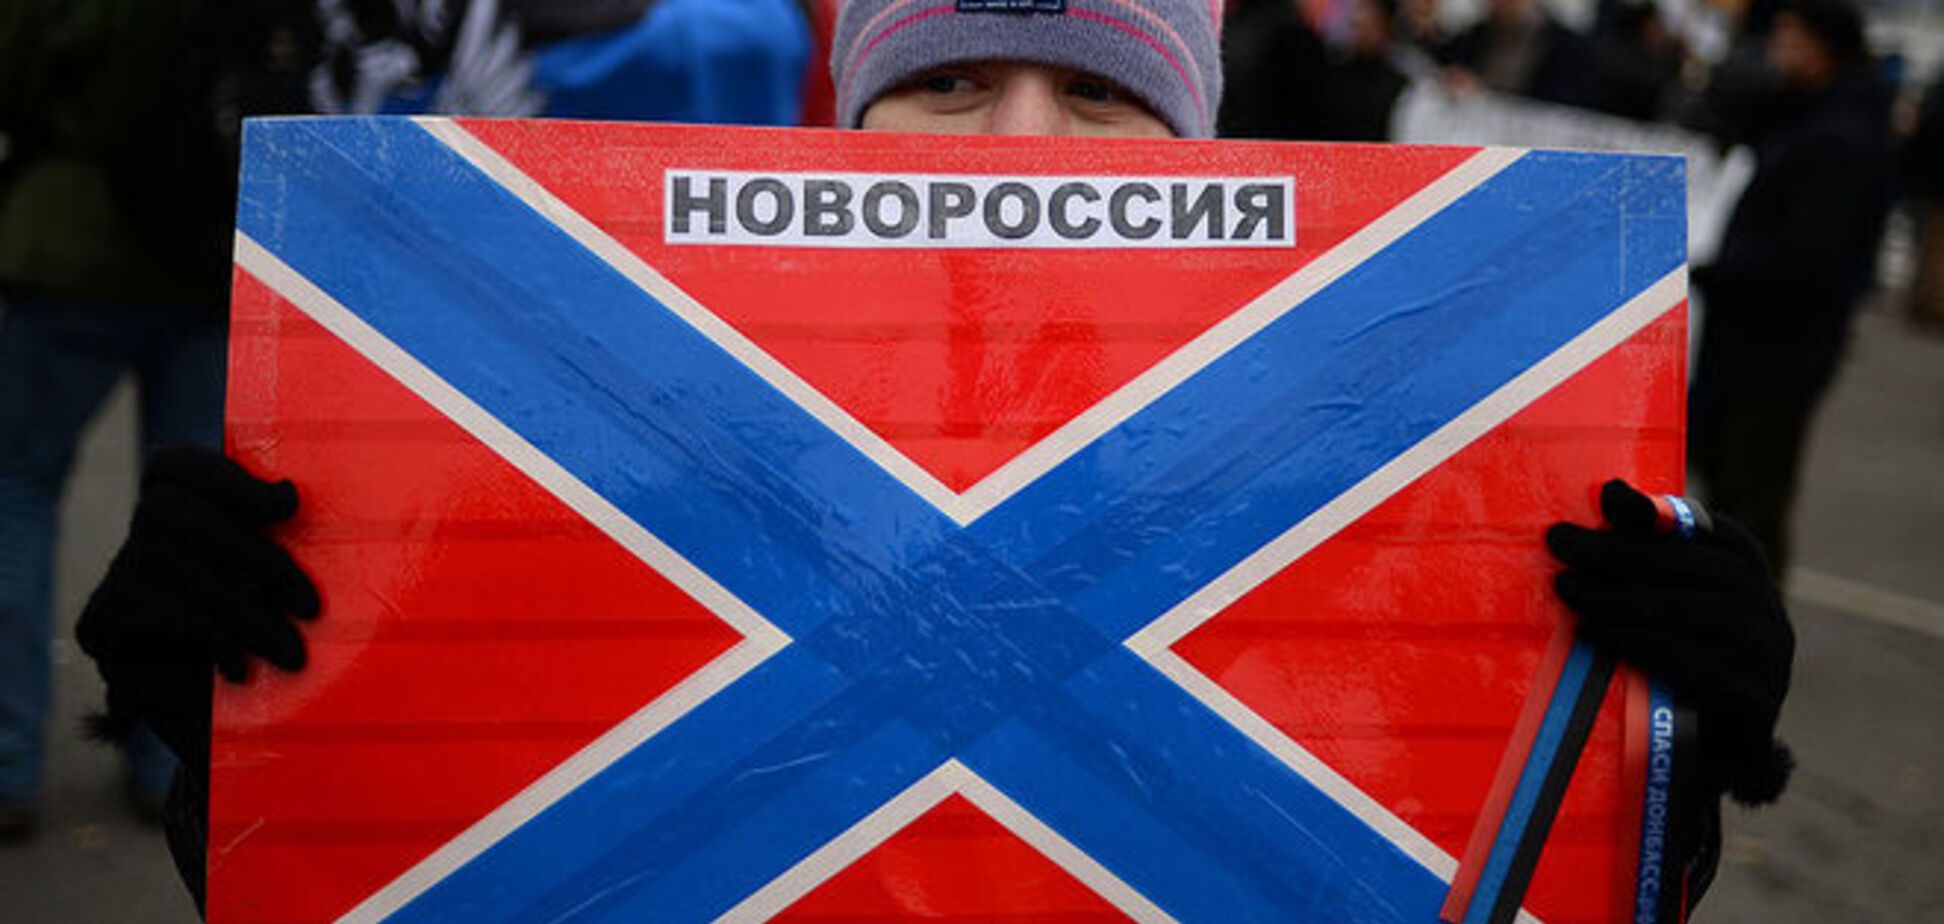 В Москве закрылся рупор боевиков Донбасса пресс-центр 'Новороссия'